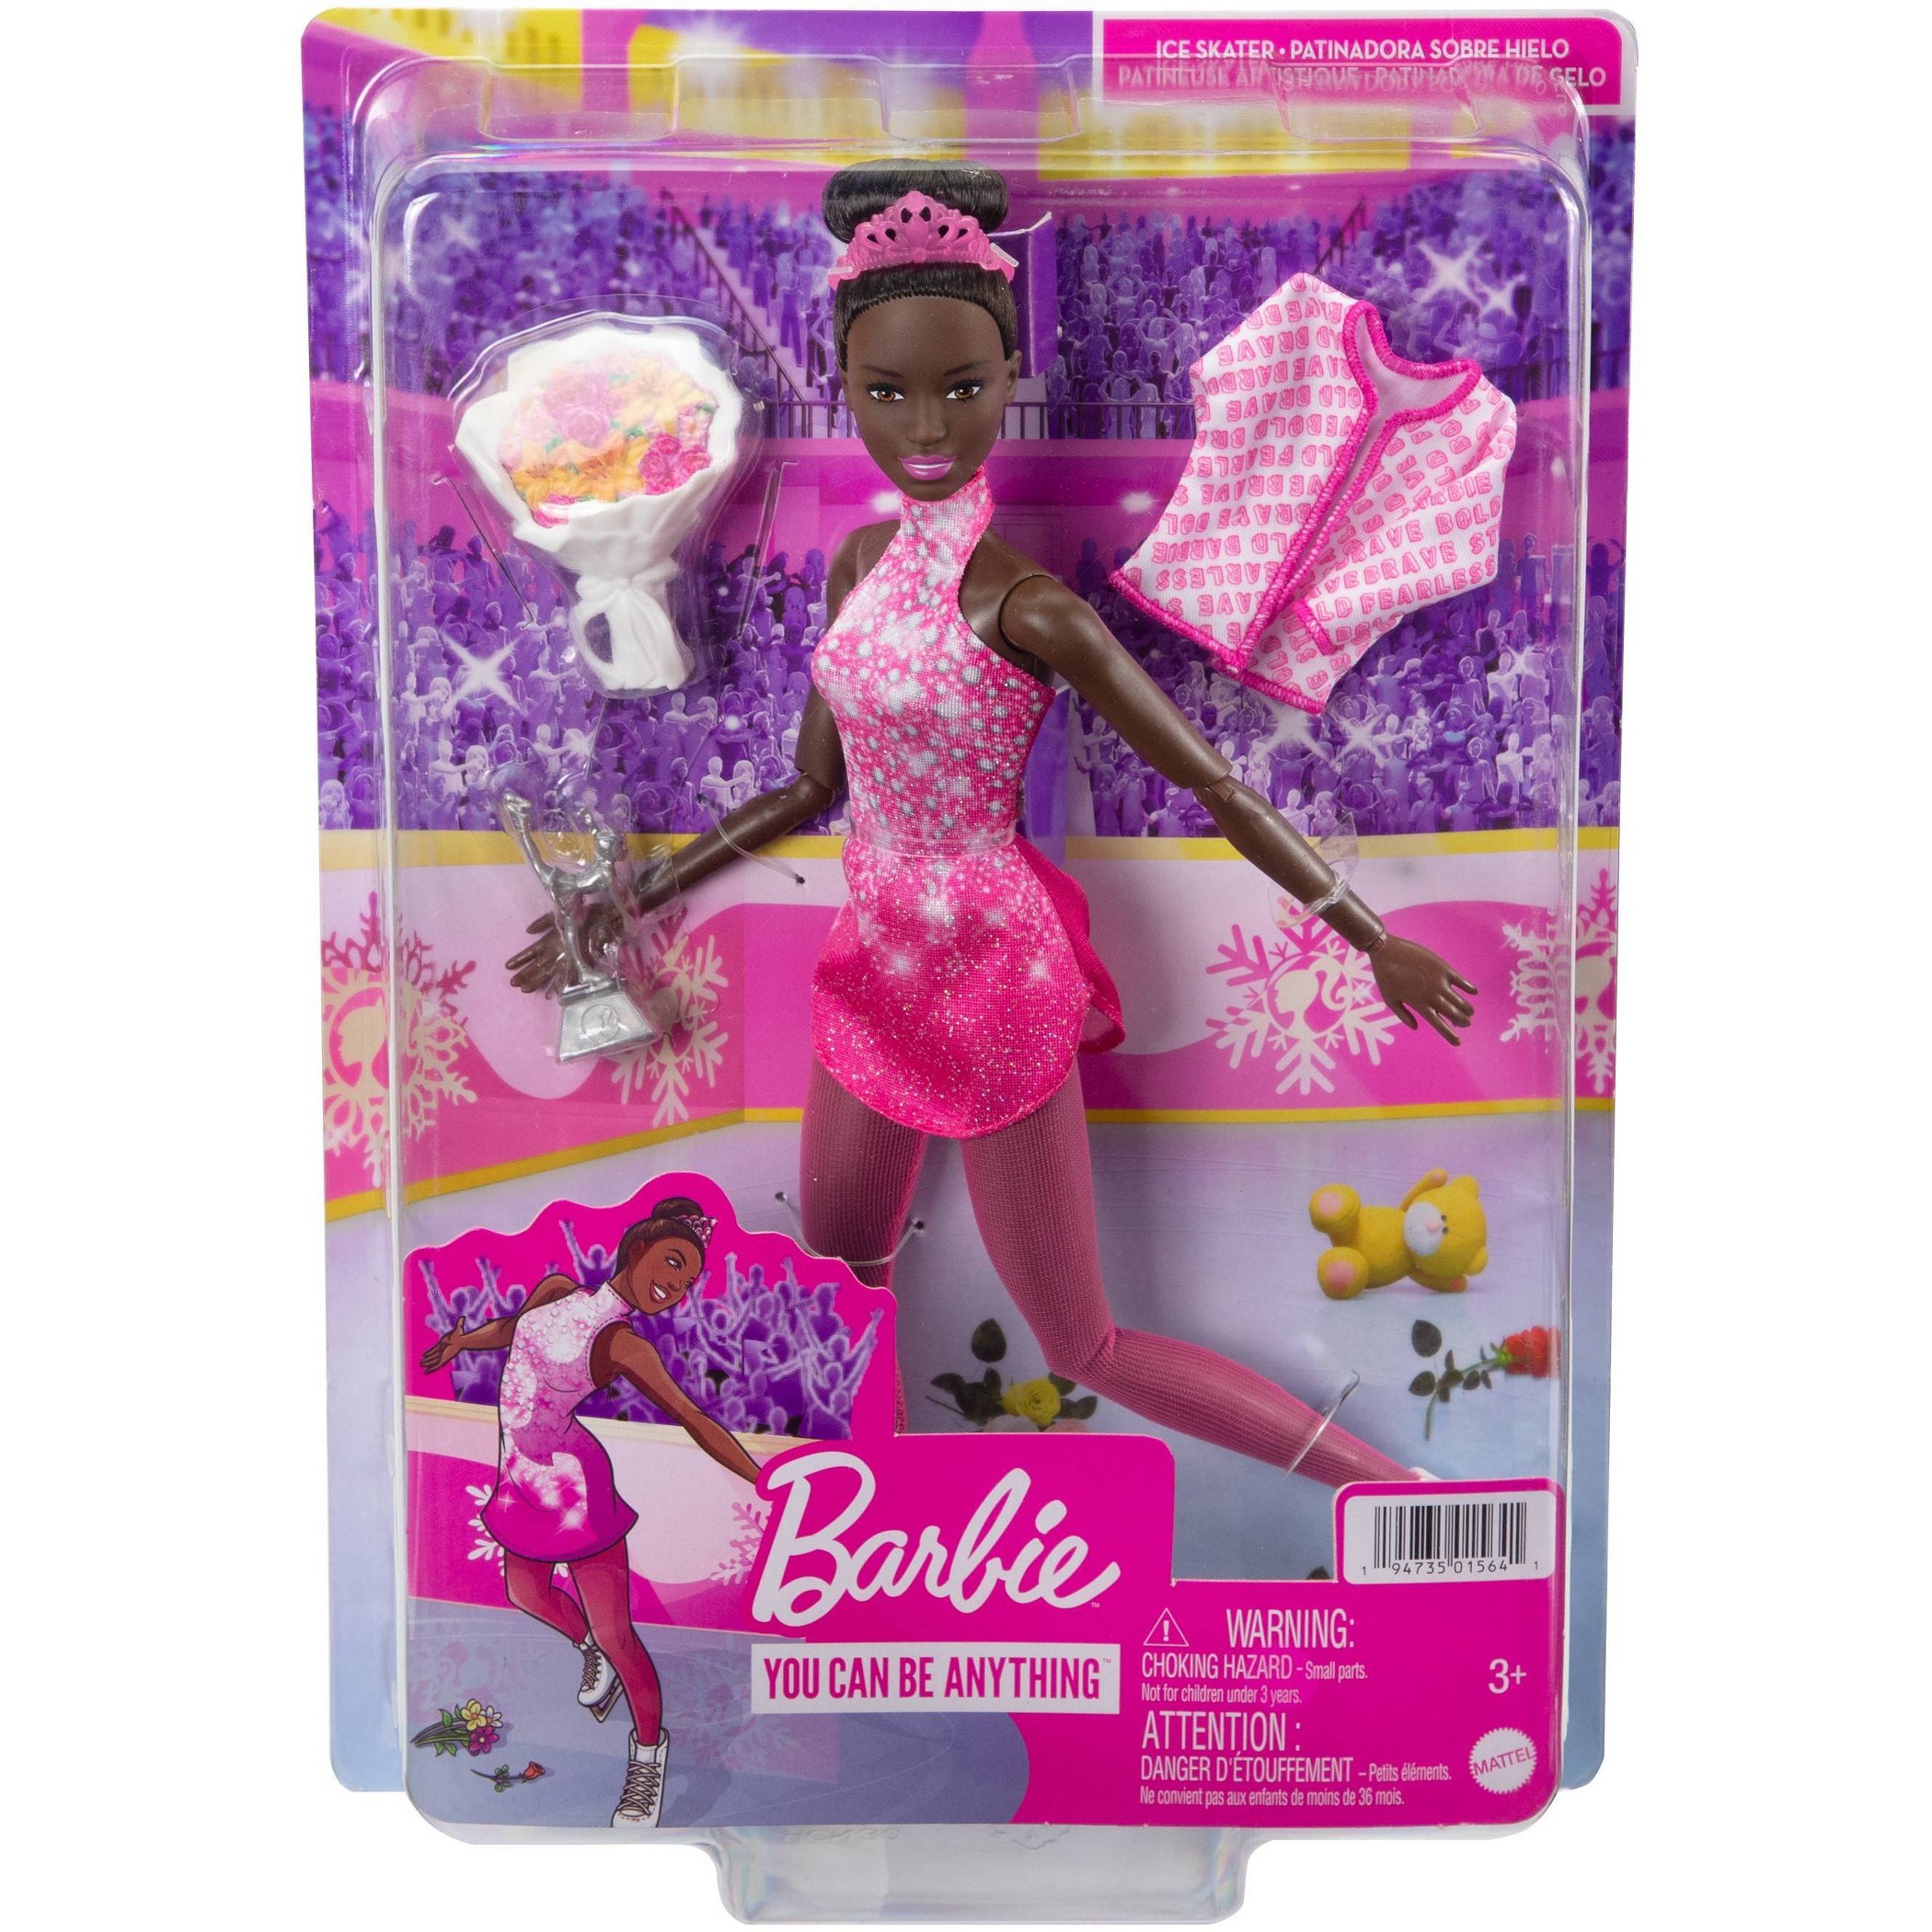 Barbie on ice